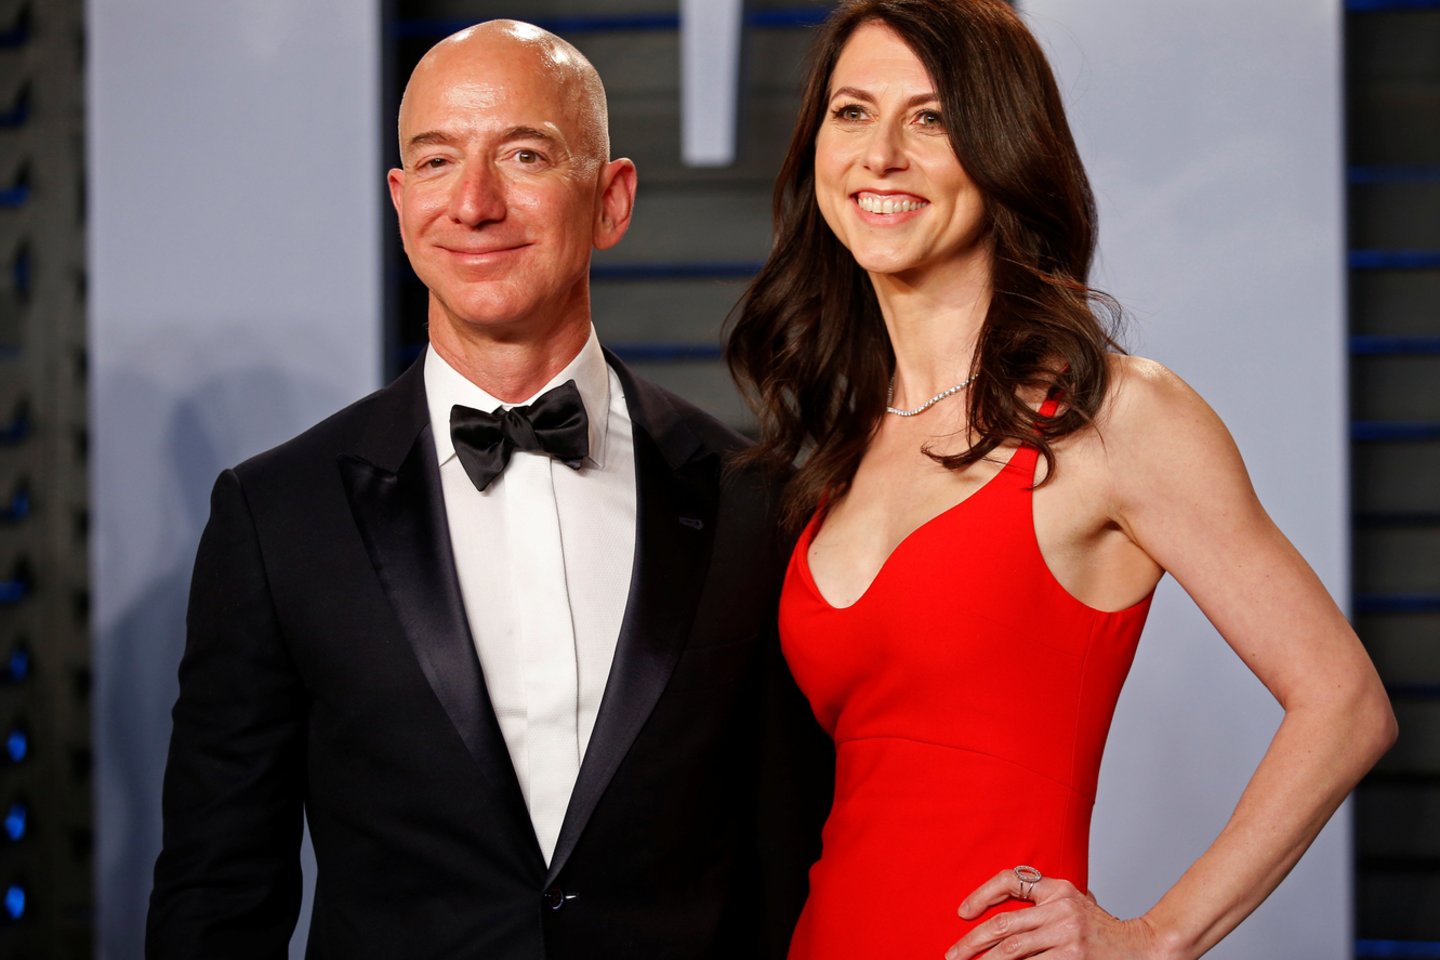  Turtingiausio pasaulio žmogaus, „Amazon“ įkūrėjo Jeffo Bezoso ir jo žmonos pranešimas apie būsimas skyrybas pakurstė vaizduotę.<br> Scanpix nuotr.